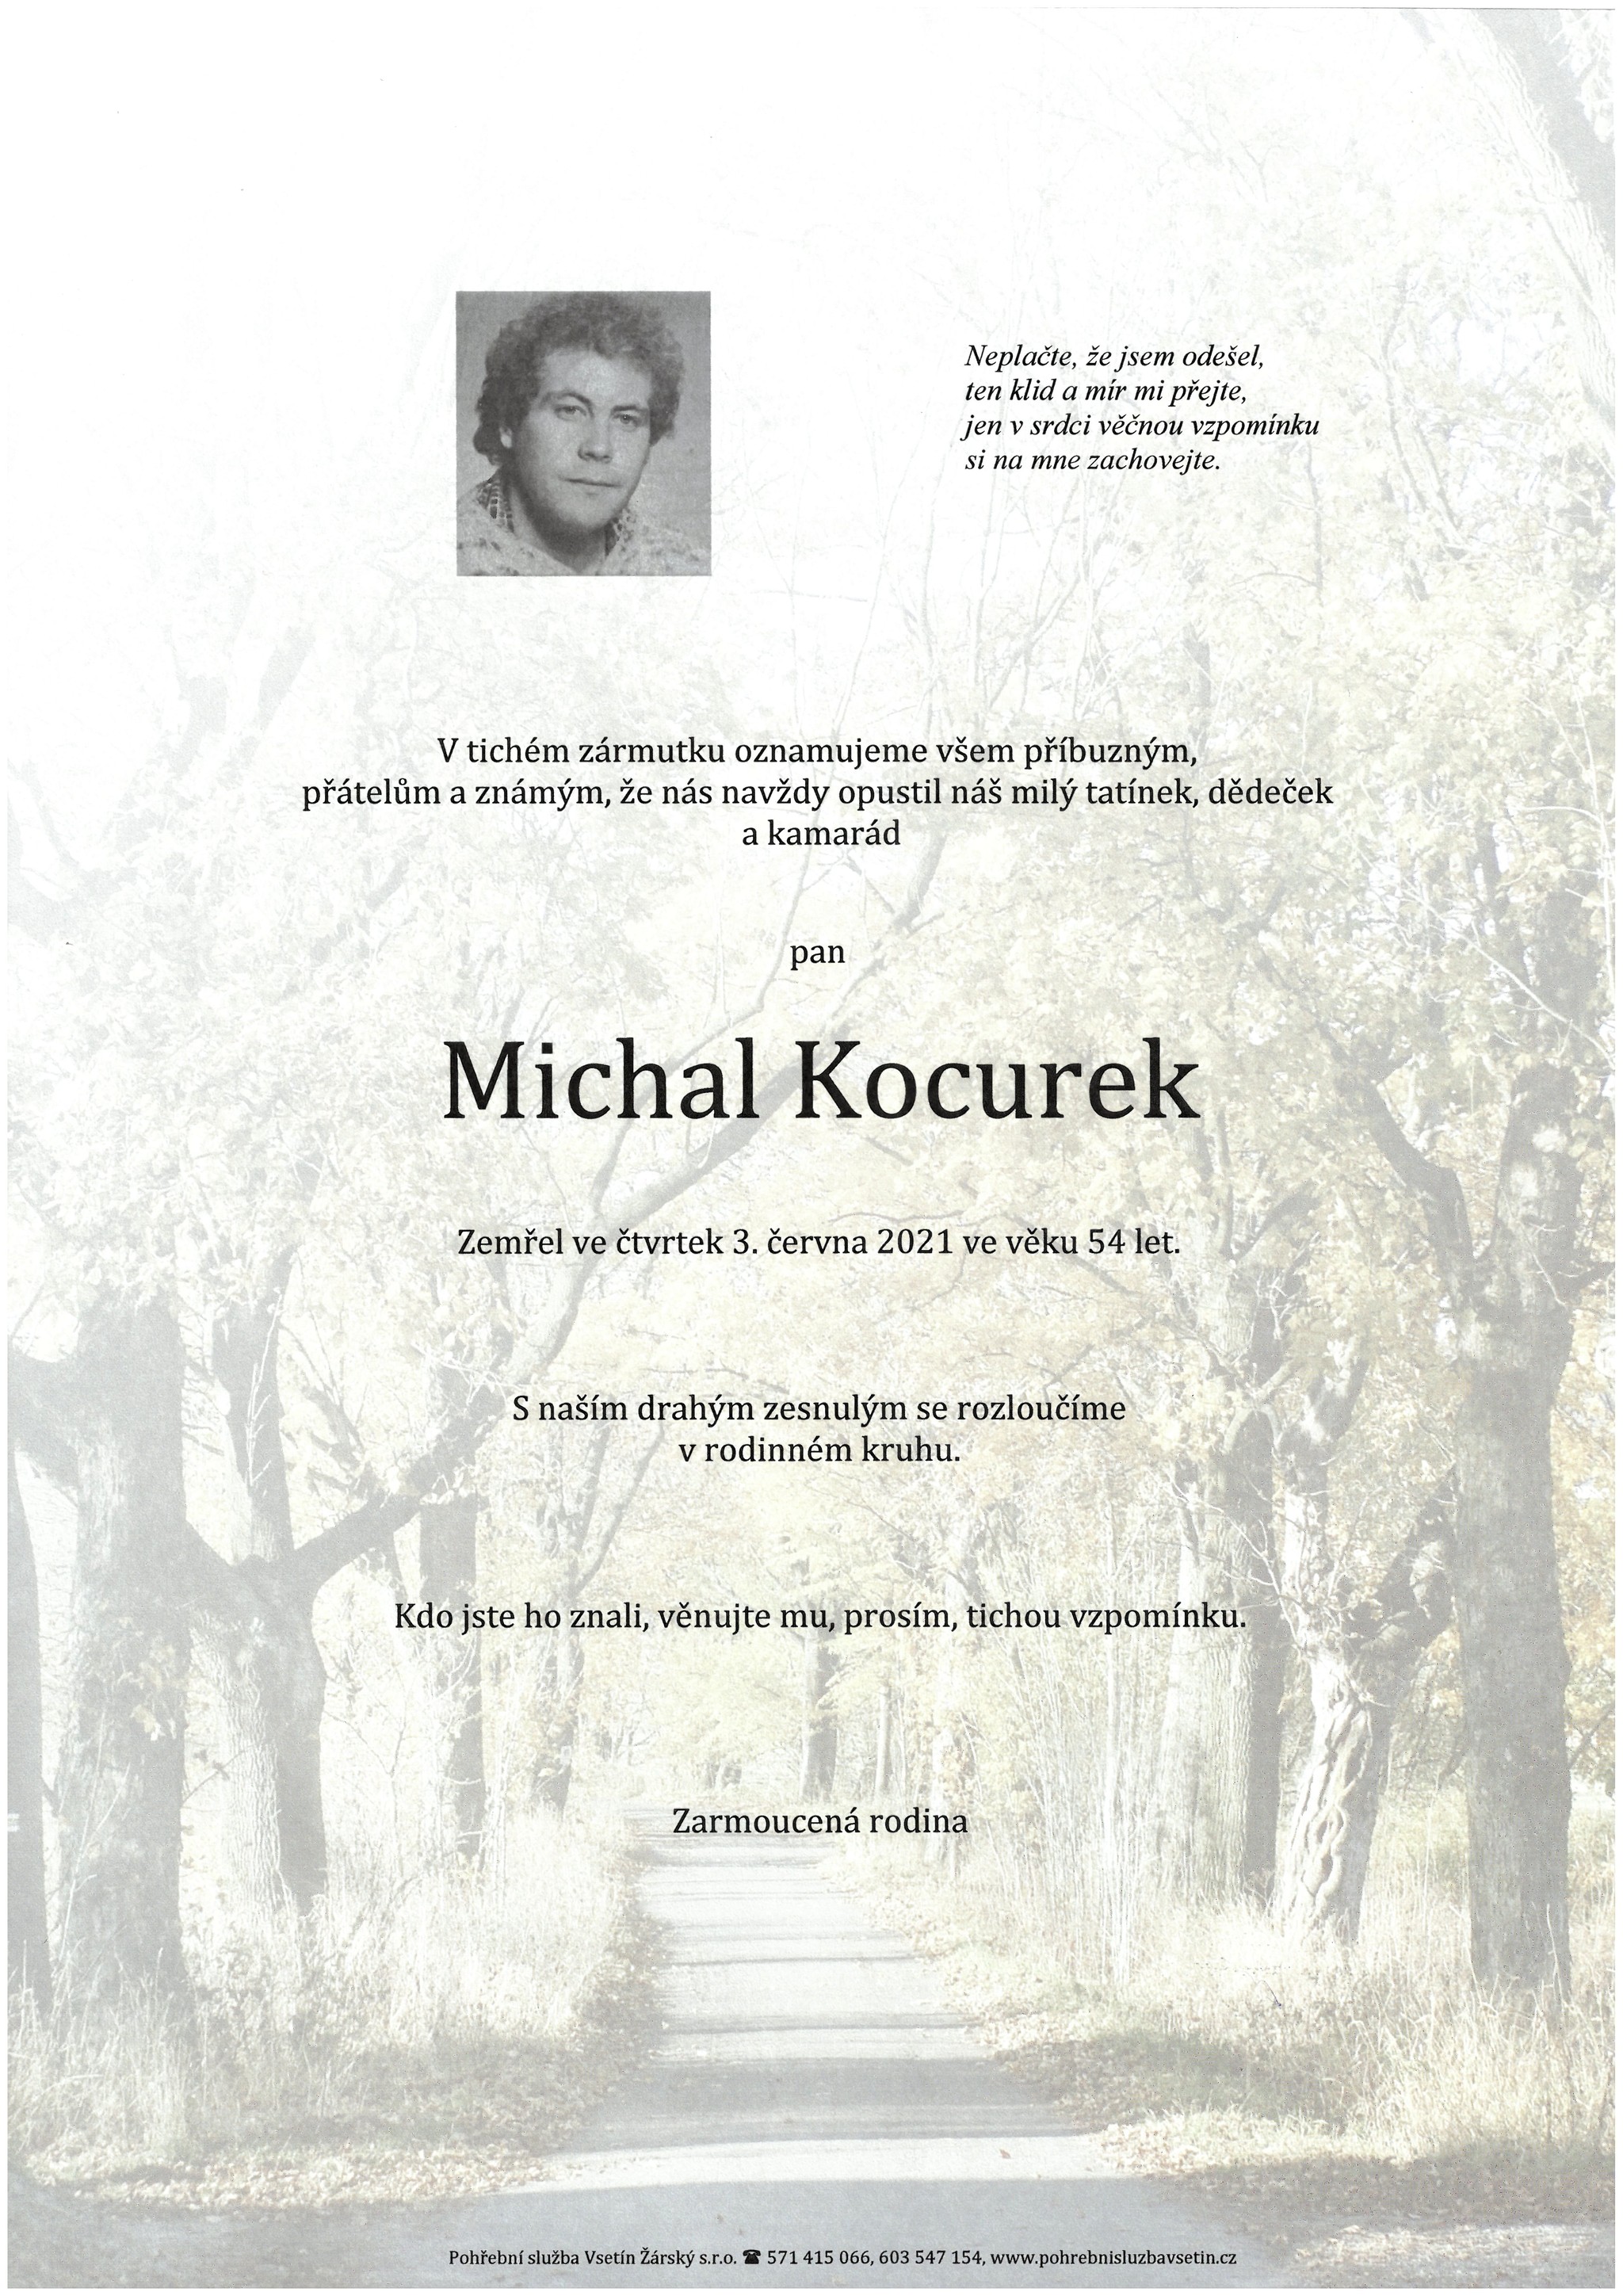 Michal Kocurek